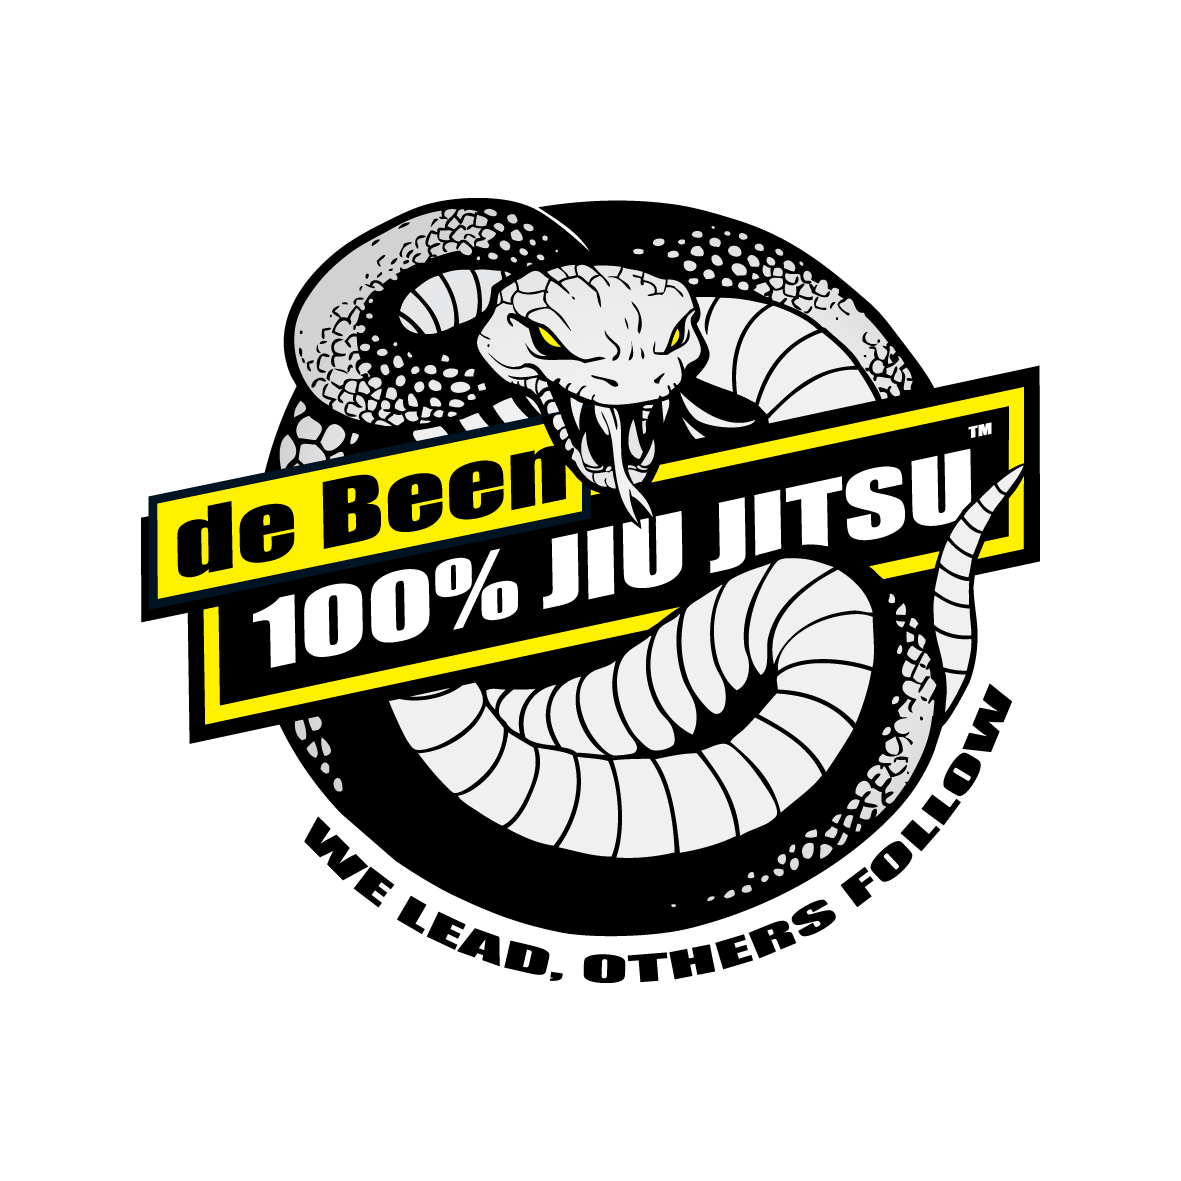 De Been Jiu-Jitsu Indonesia